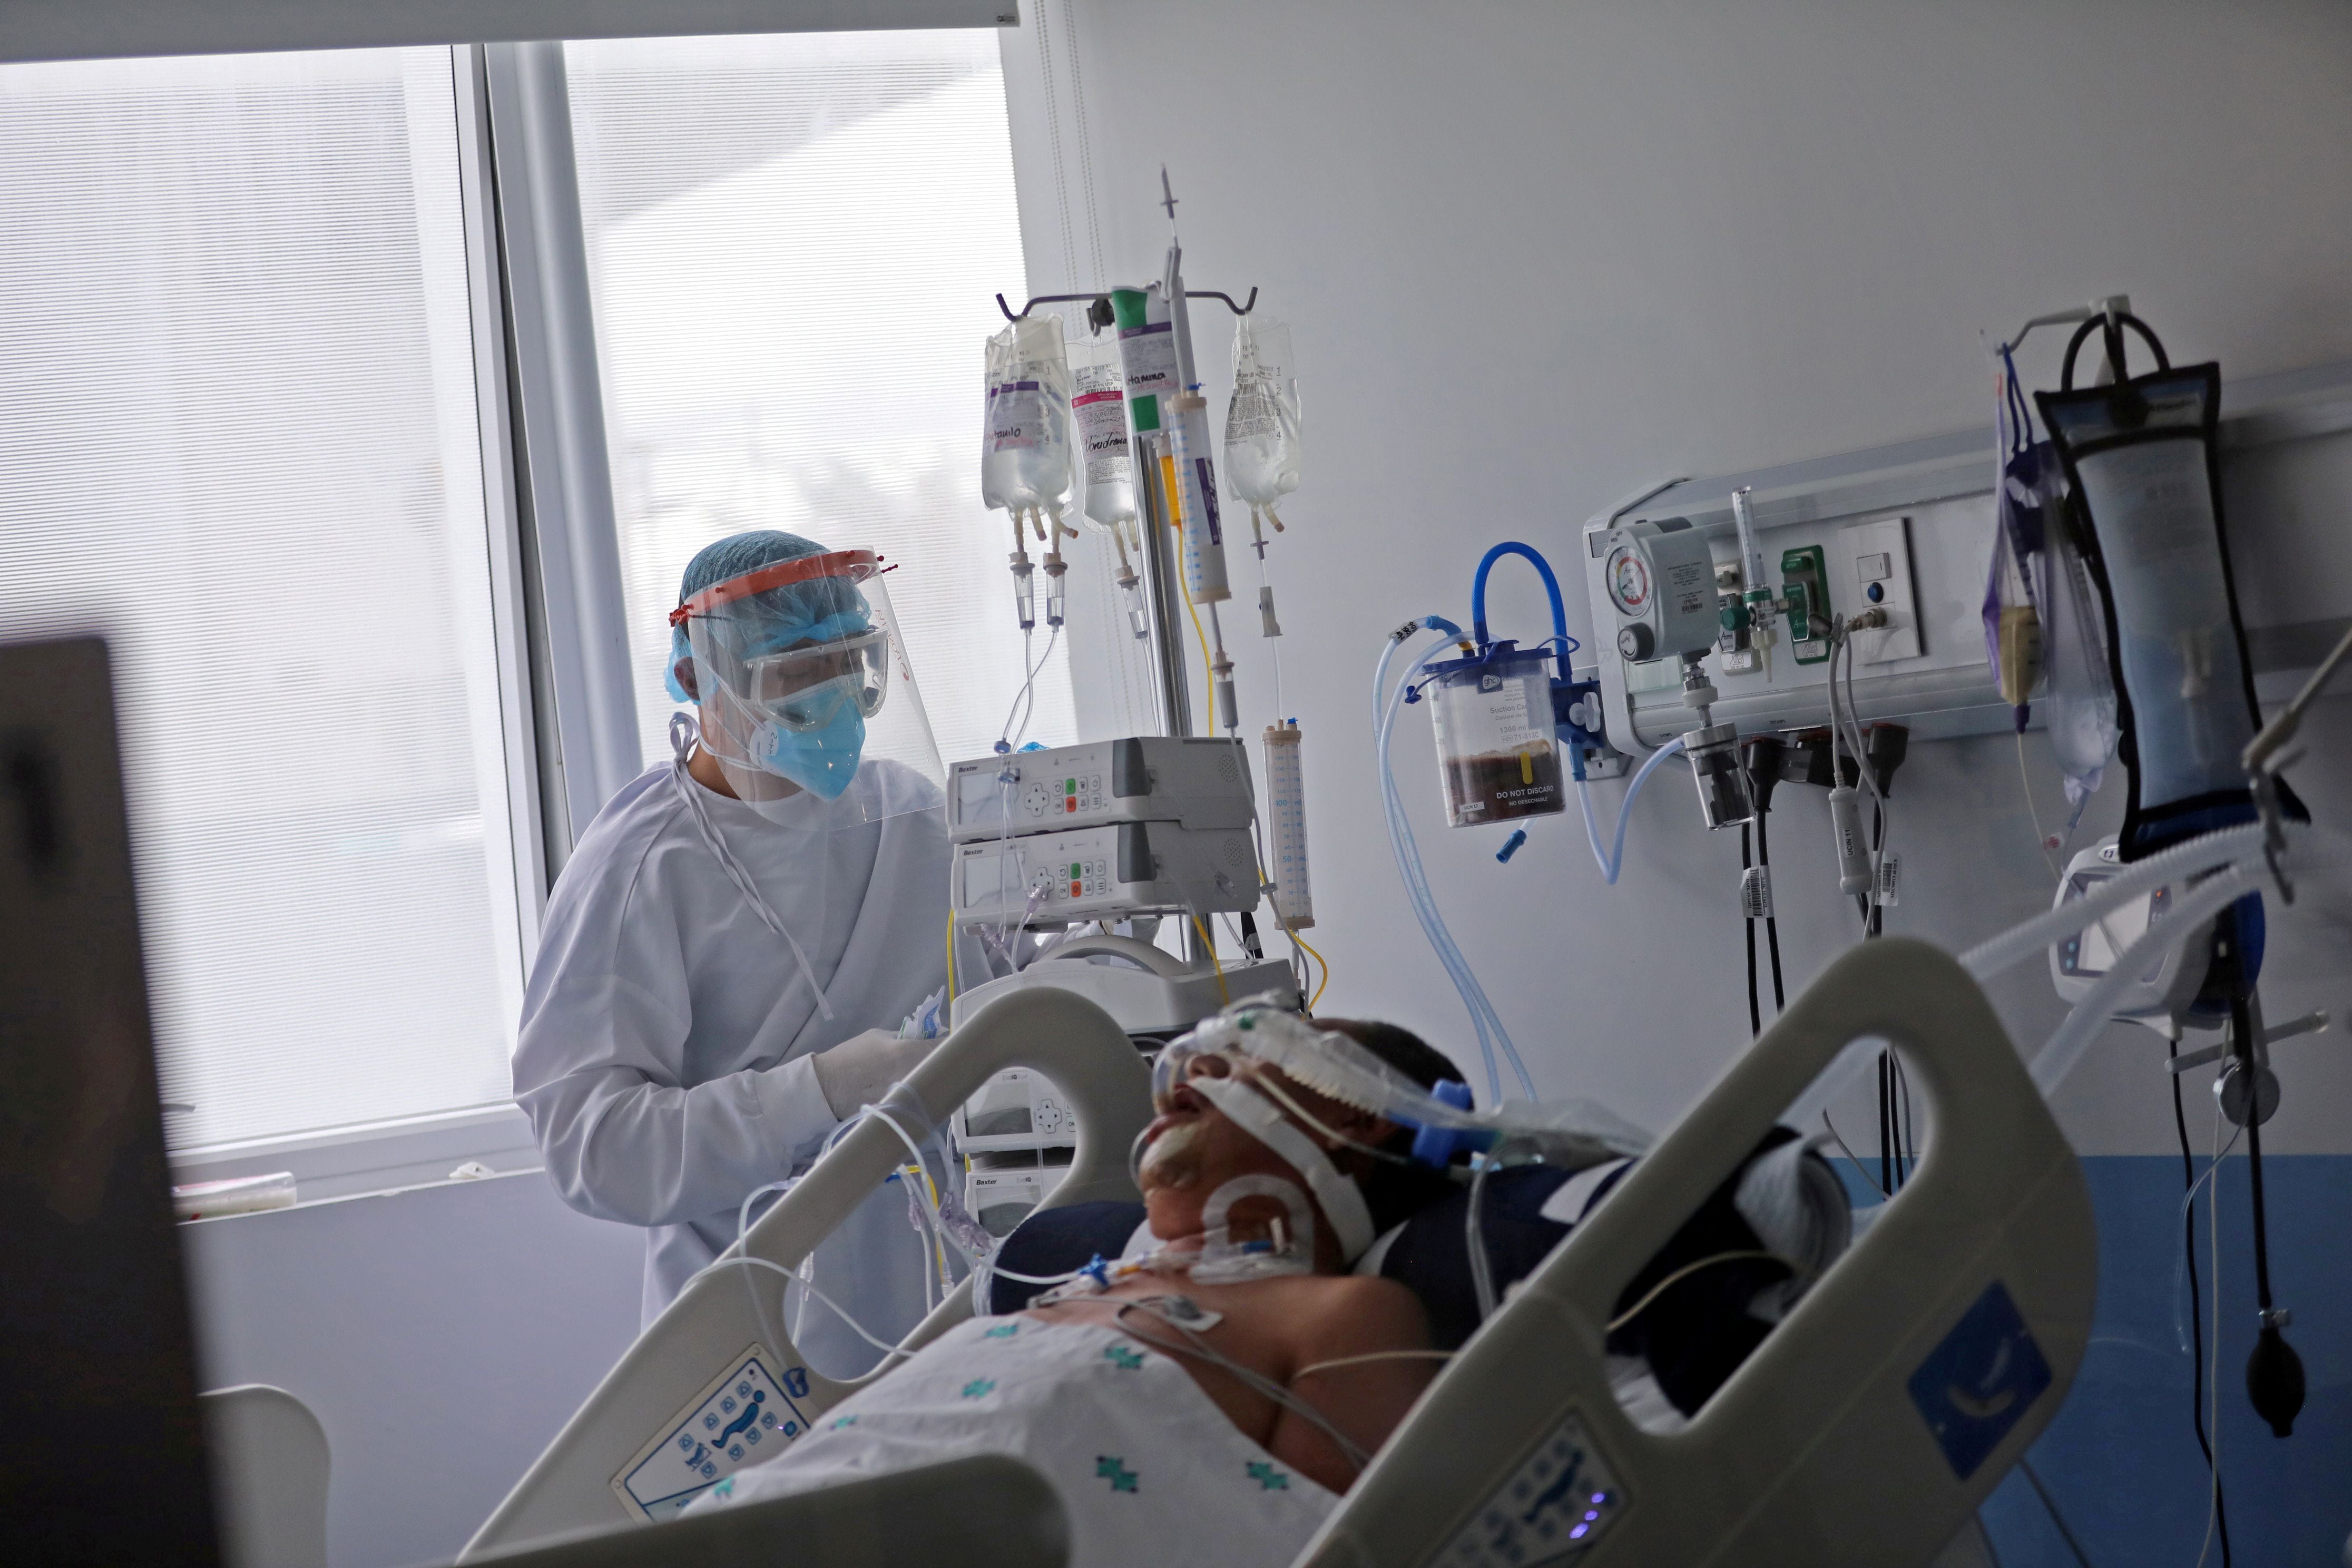 El nivel de estrés en el personal de la salud se ha incrementado mucho durante la pandemia - REUTERS/Luisa Gonzalez/File Photo